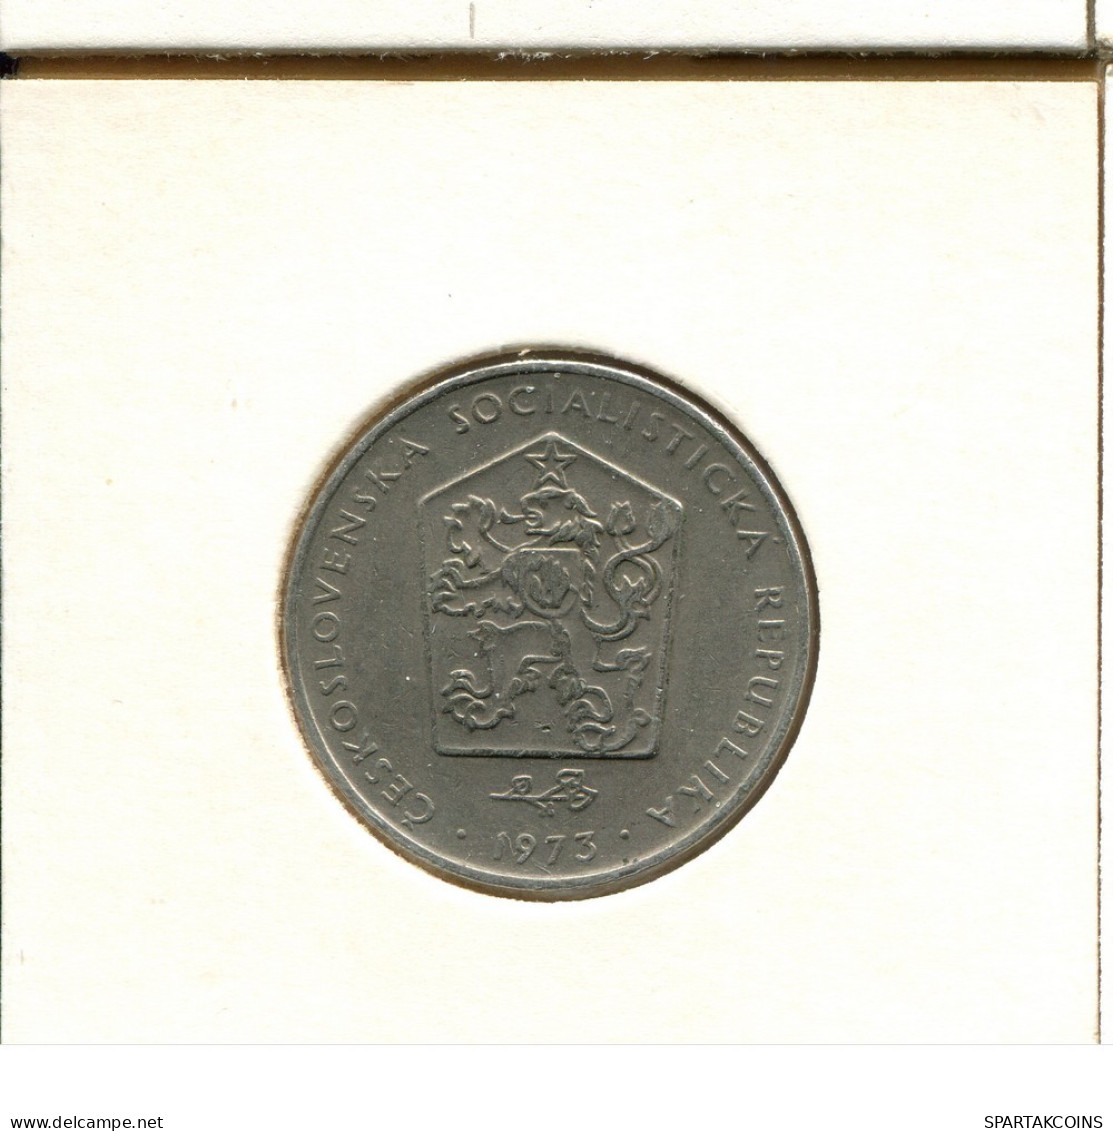 2 KORUN 1973 TSCHECHOSLOWAKEI CZECHOSLOWAKEI SLOVAKIA Münze #AS973.D.A - Tschechoslowakei